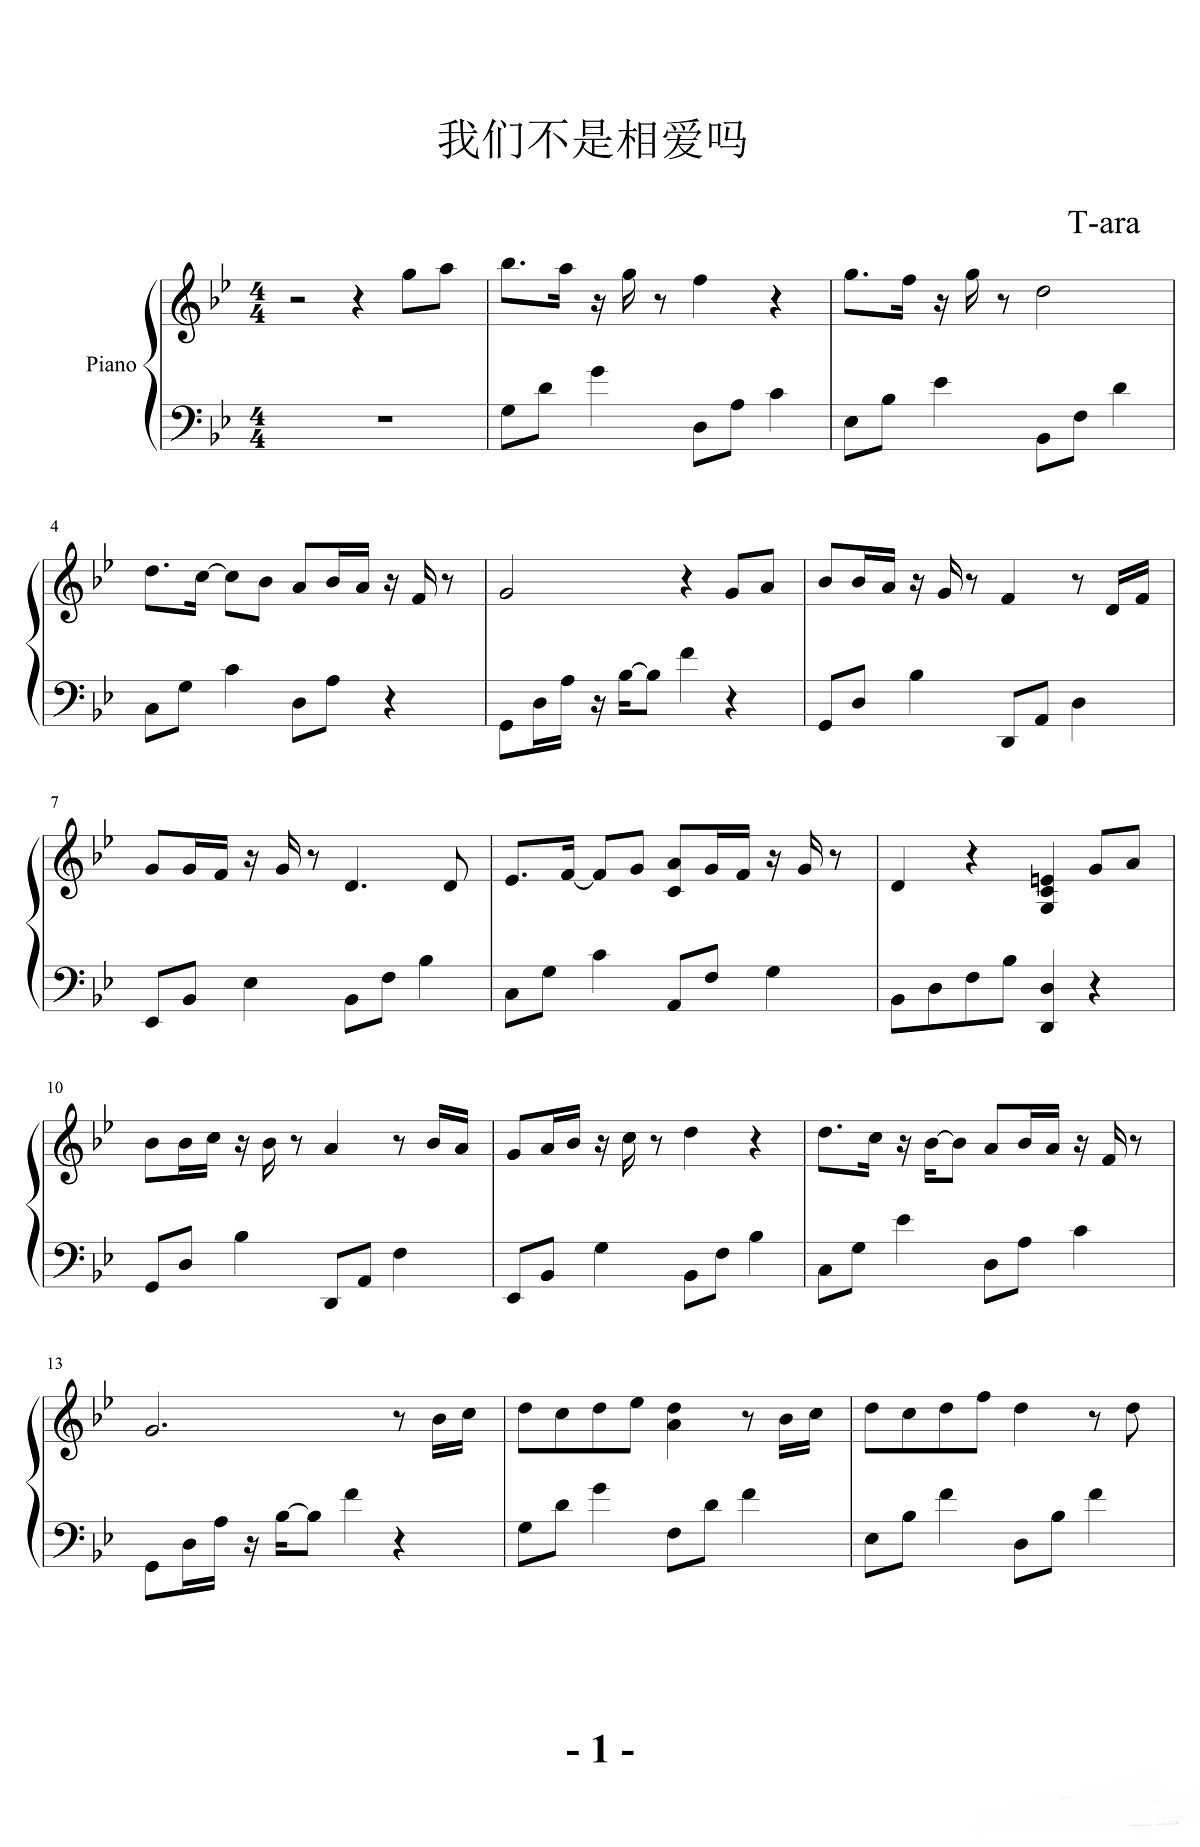 【我们不是相爱吗】的钢琴谱简谱 – T-ara